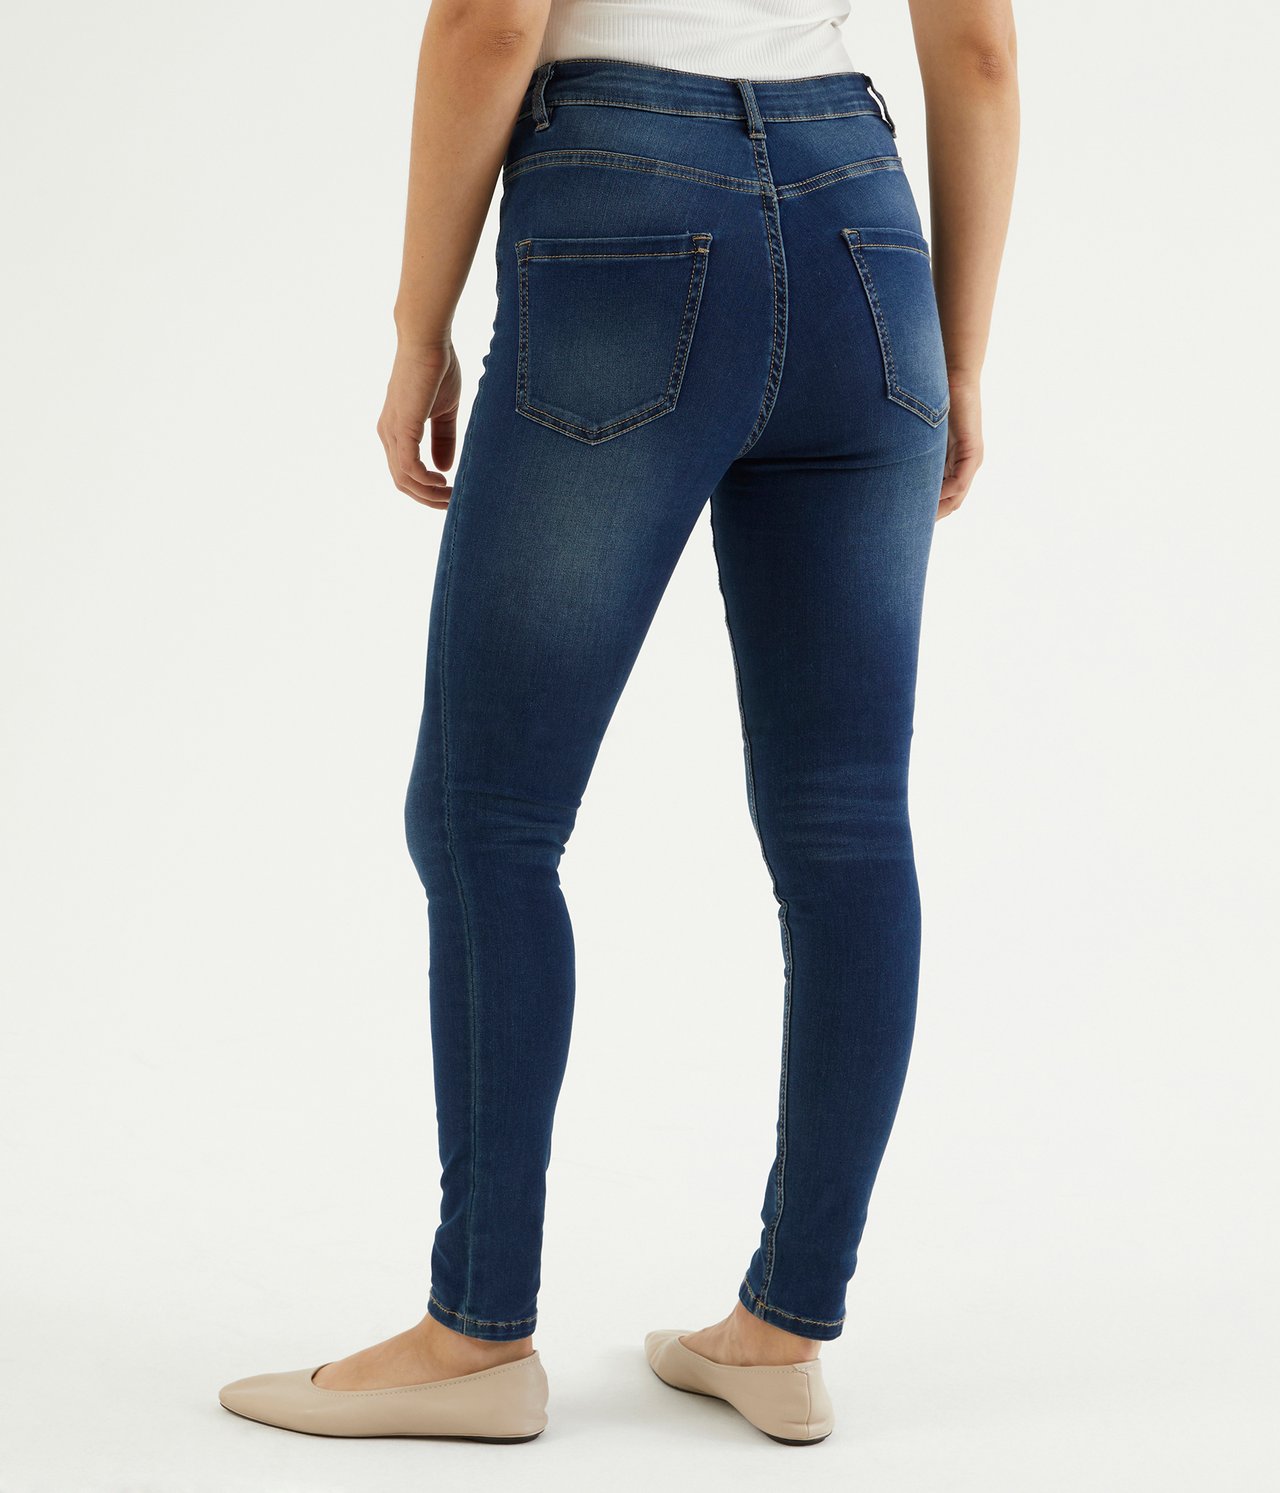 Super Slim Jeans High Waist - Mörk denim - 174cm / Storlek: 38 - 7